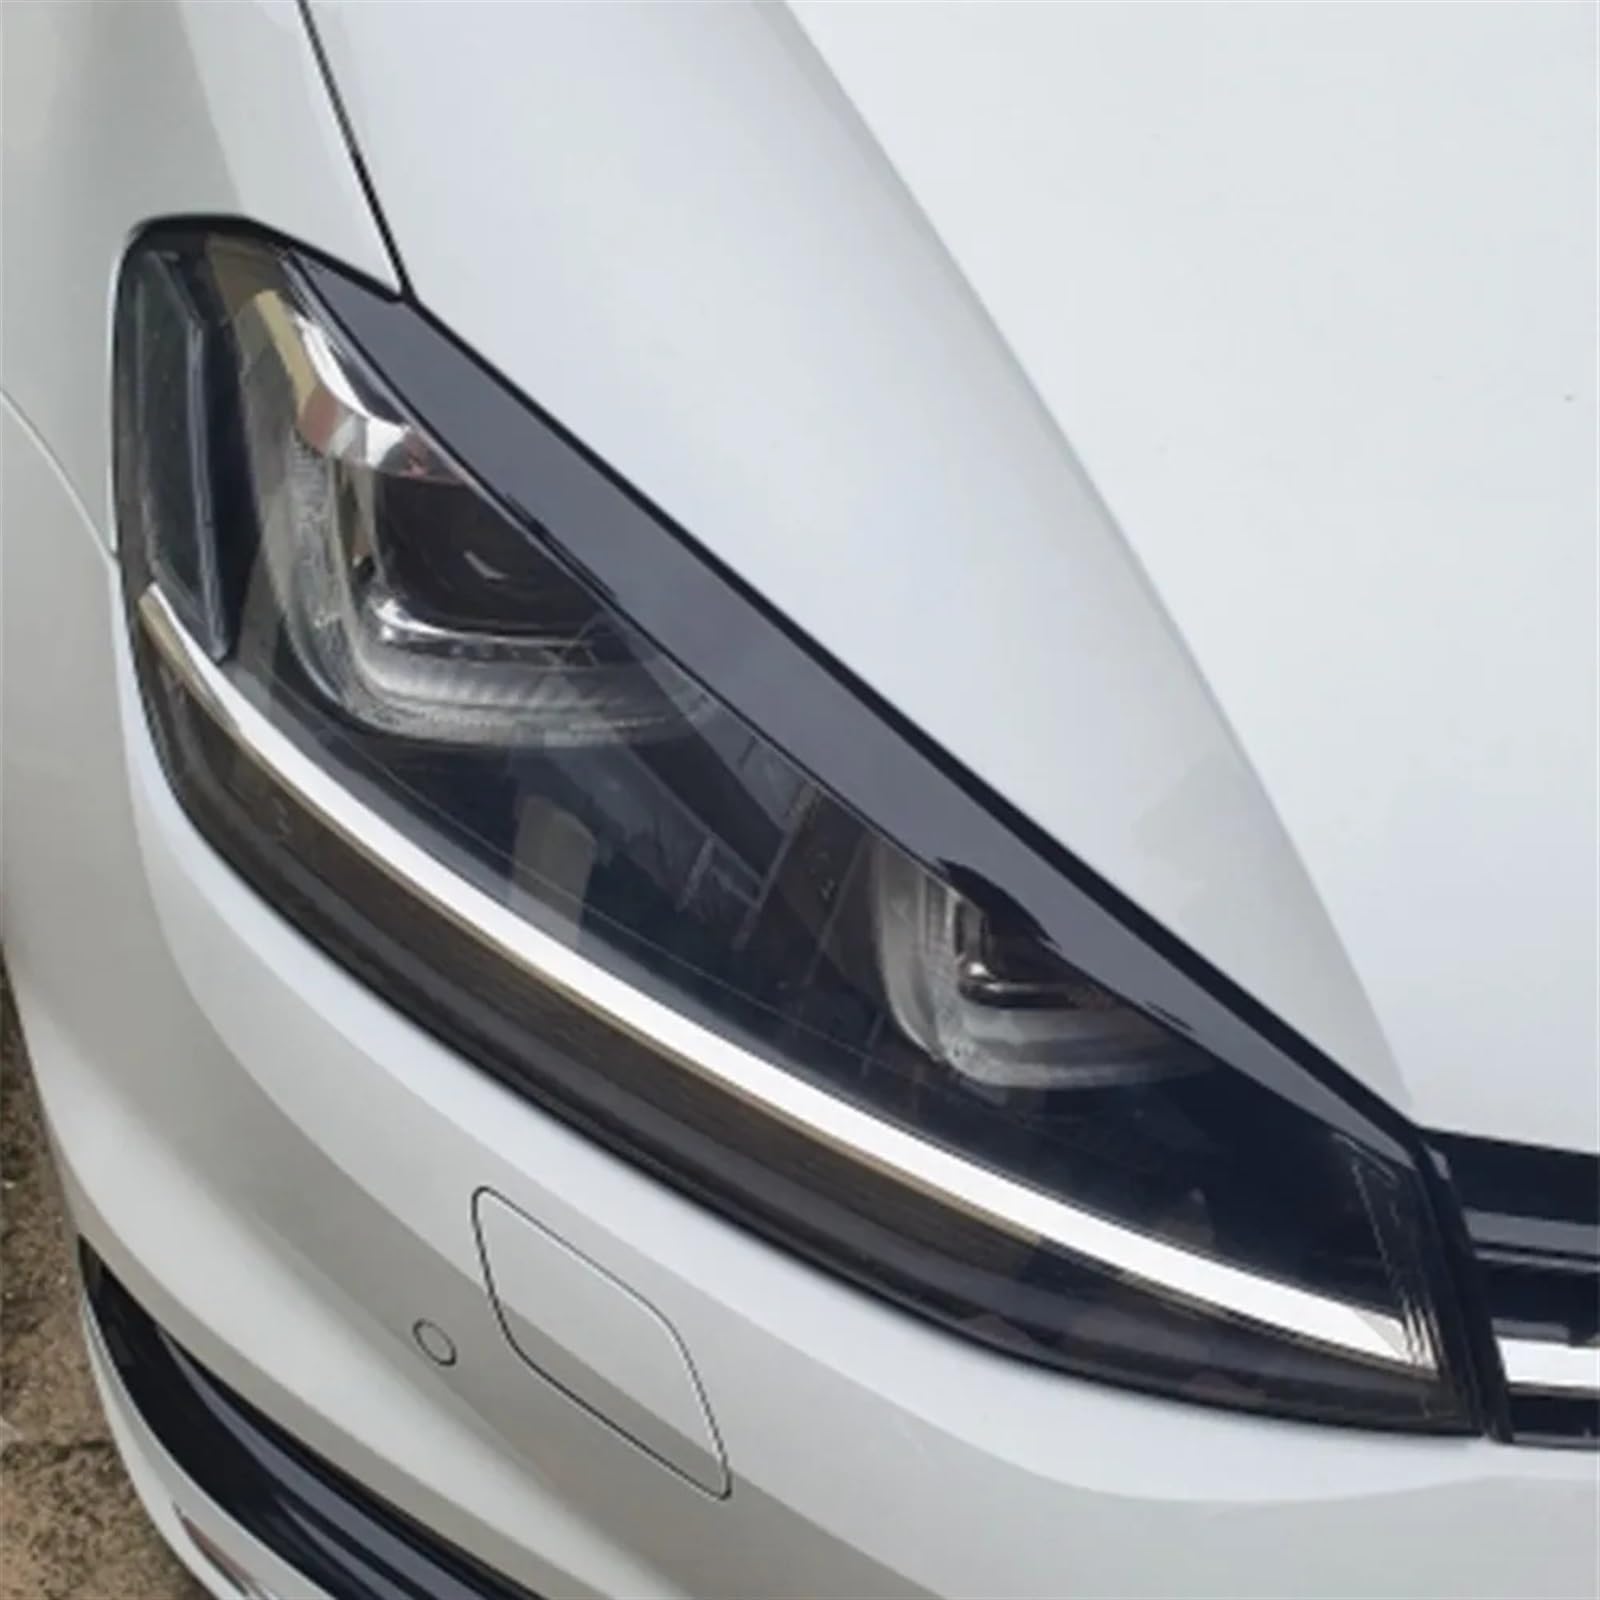 EVURU Scheinwerfer-Augenbrauen, Farbe Mein Leben for Volkswagen for VW Golf 7 MK7 GTI Scheinwerfer Trim Lampe Augenbraue Scheinwerfer Abdeckung Trim Dekoration for Golf7 GTI MK7 (Size : Full Black) von EVURU